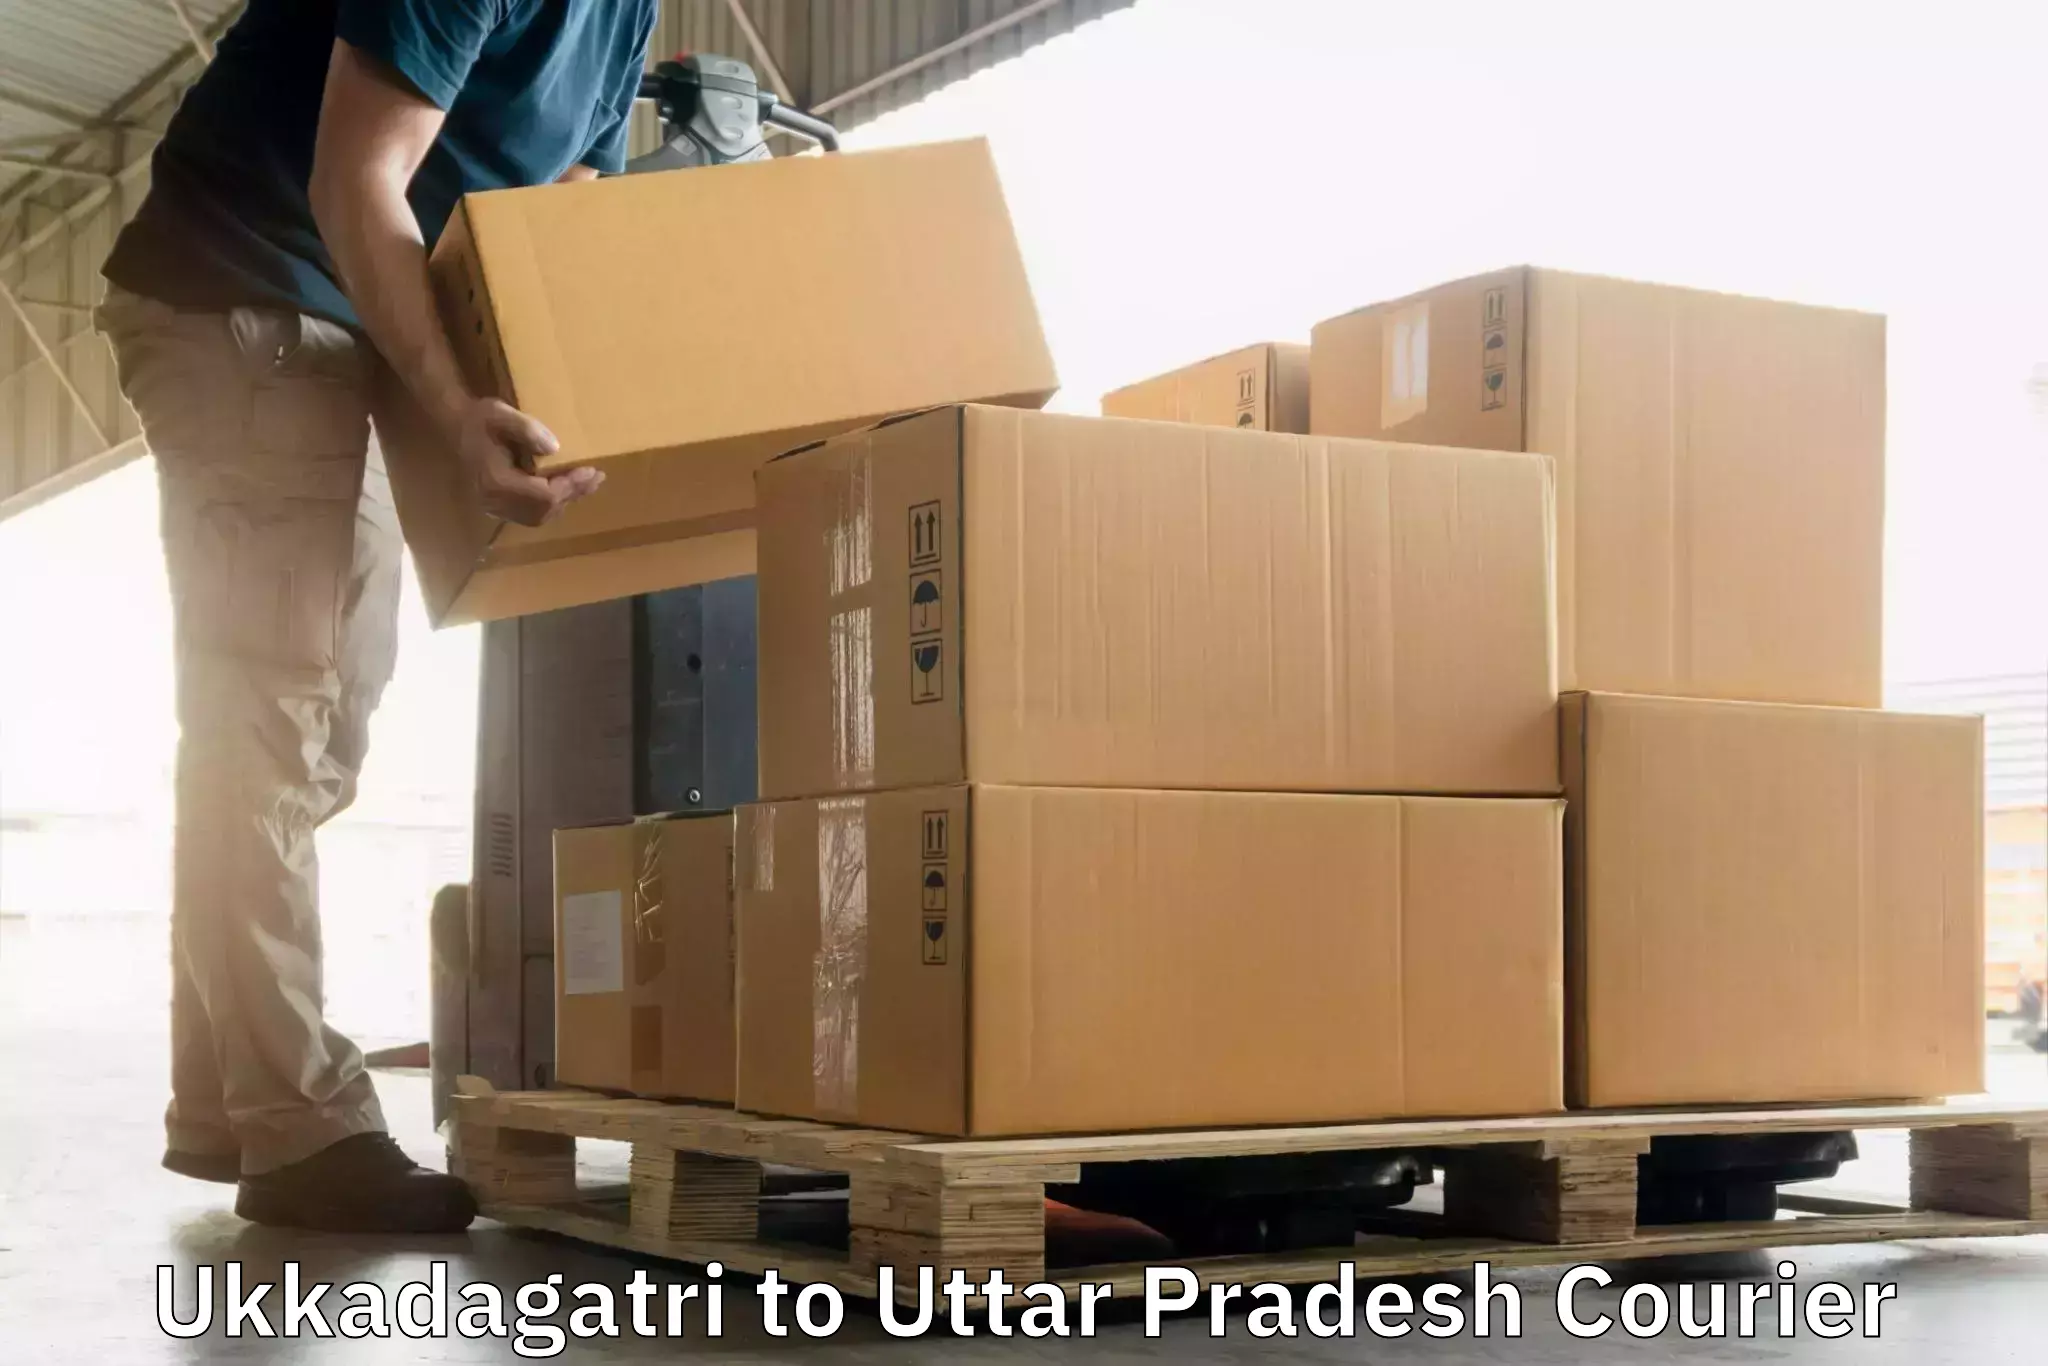 Multi-service courier options Ukkadagatri to IIT Kanpur